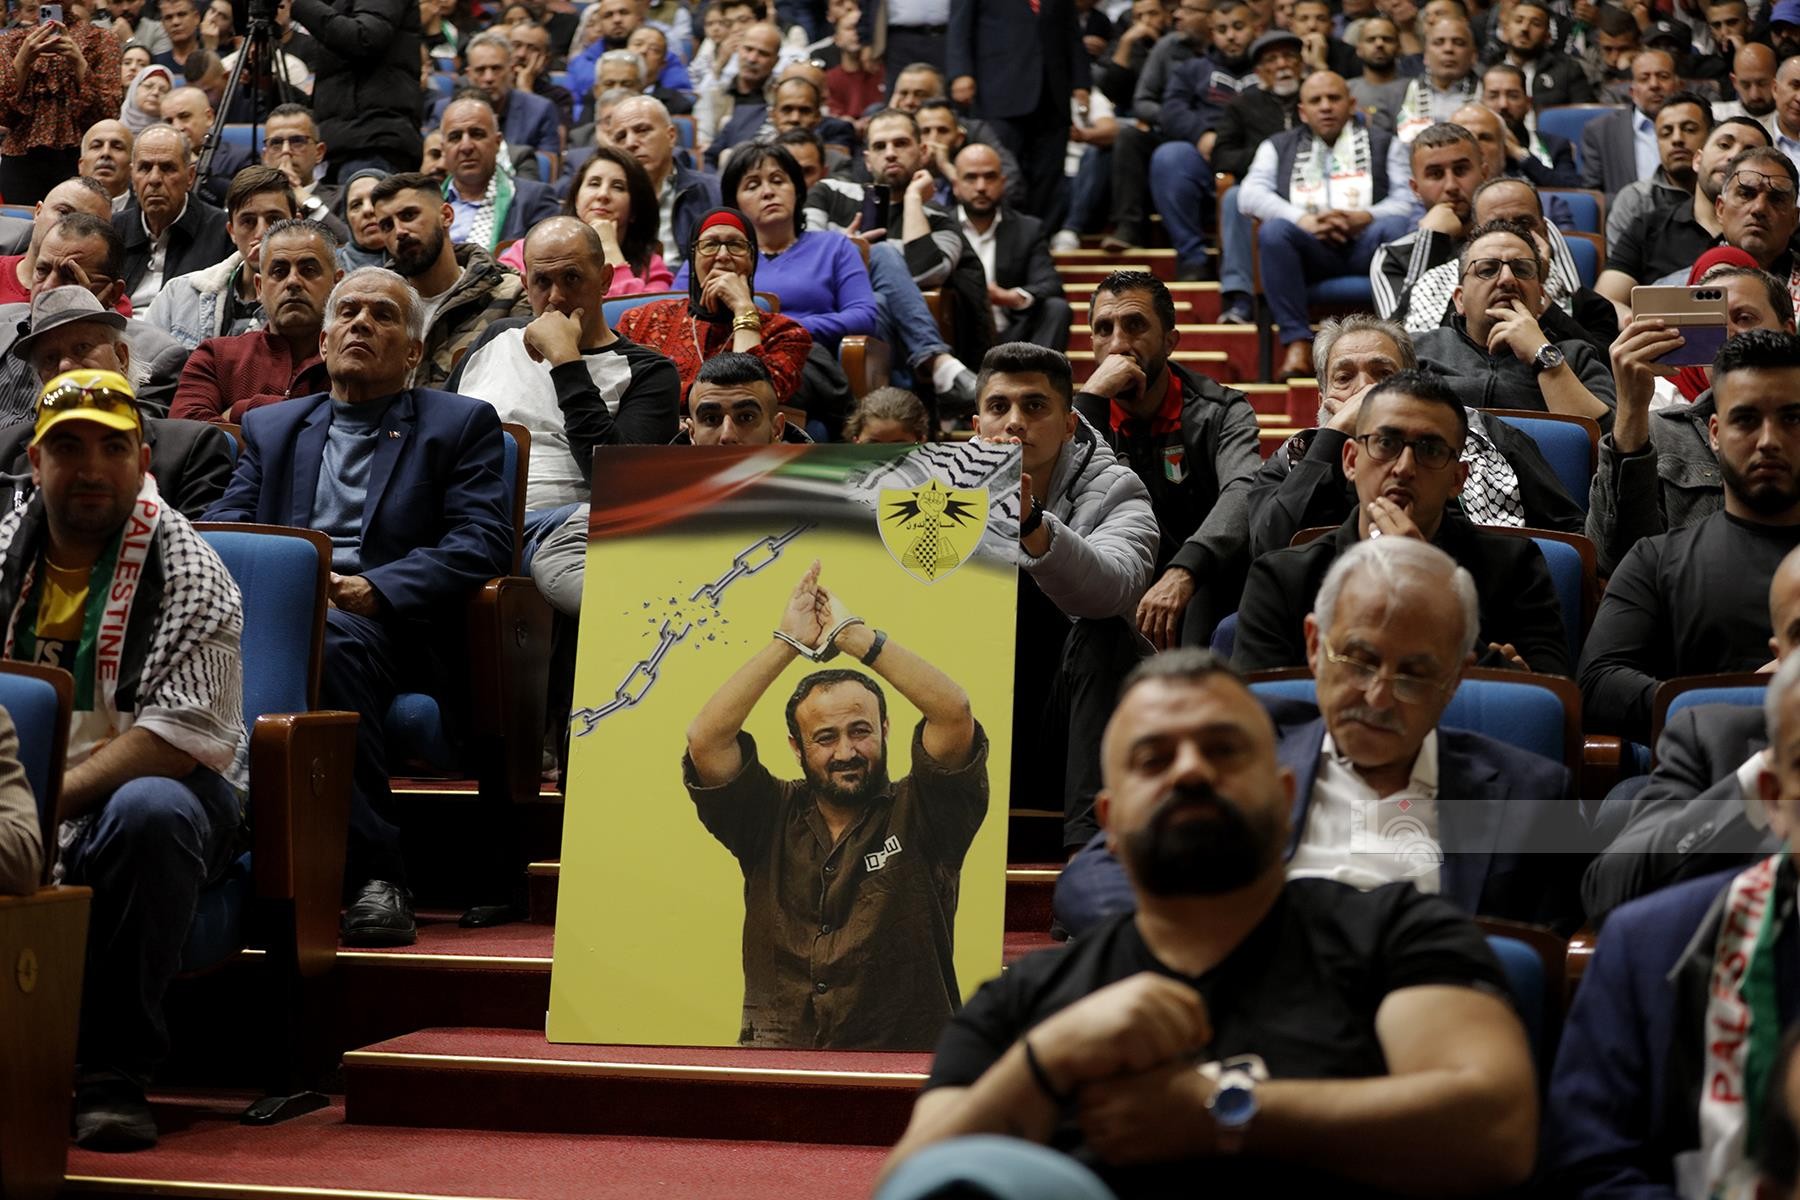 اللجنة الوطنية لاطلاق سراح الاسير القائد مروان البرغوثي تنظم مهرجان جماهيري في الذكرى الـسنوية الـ21 لاعتقاله 32.jpg